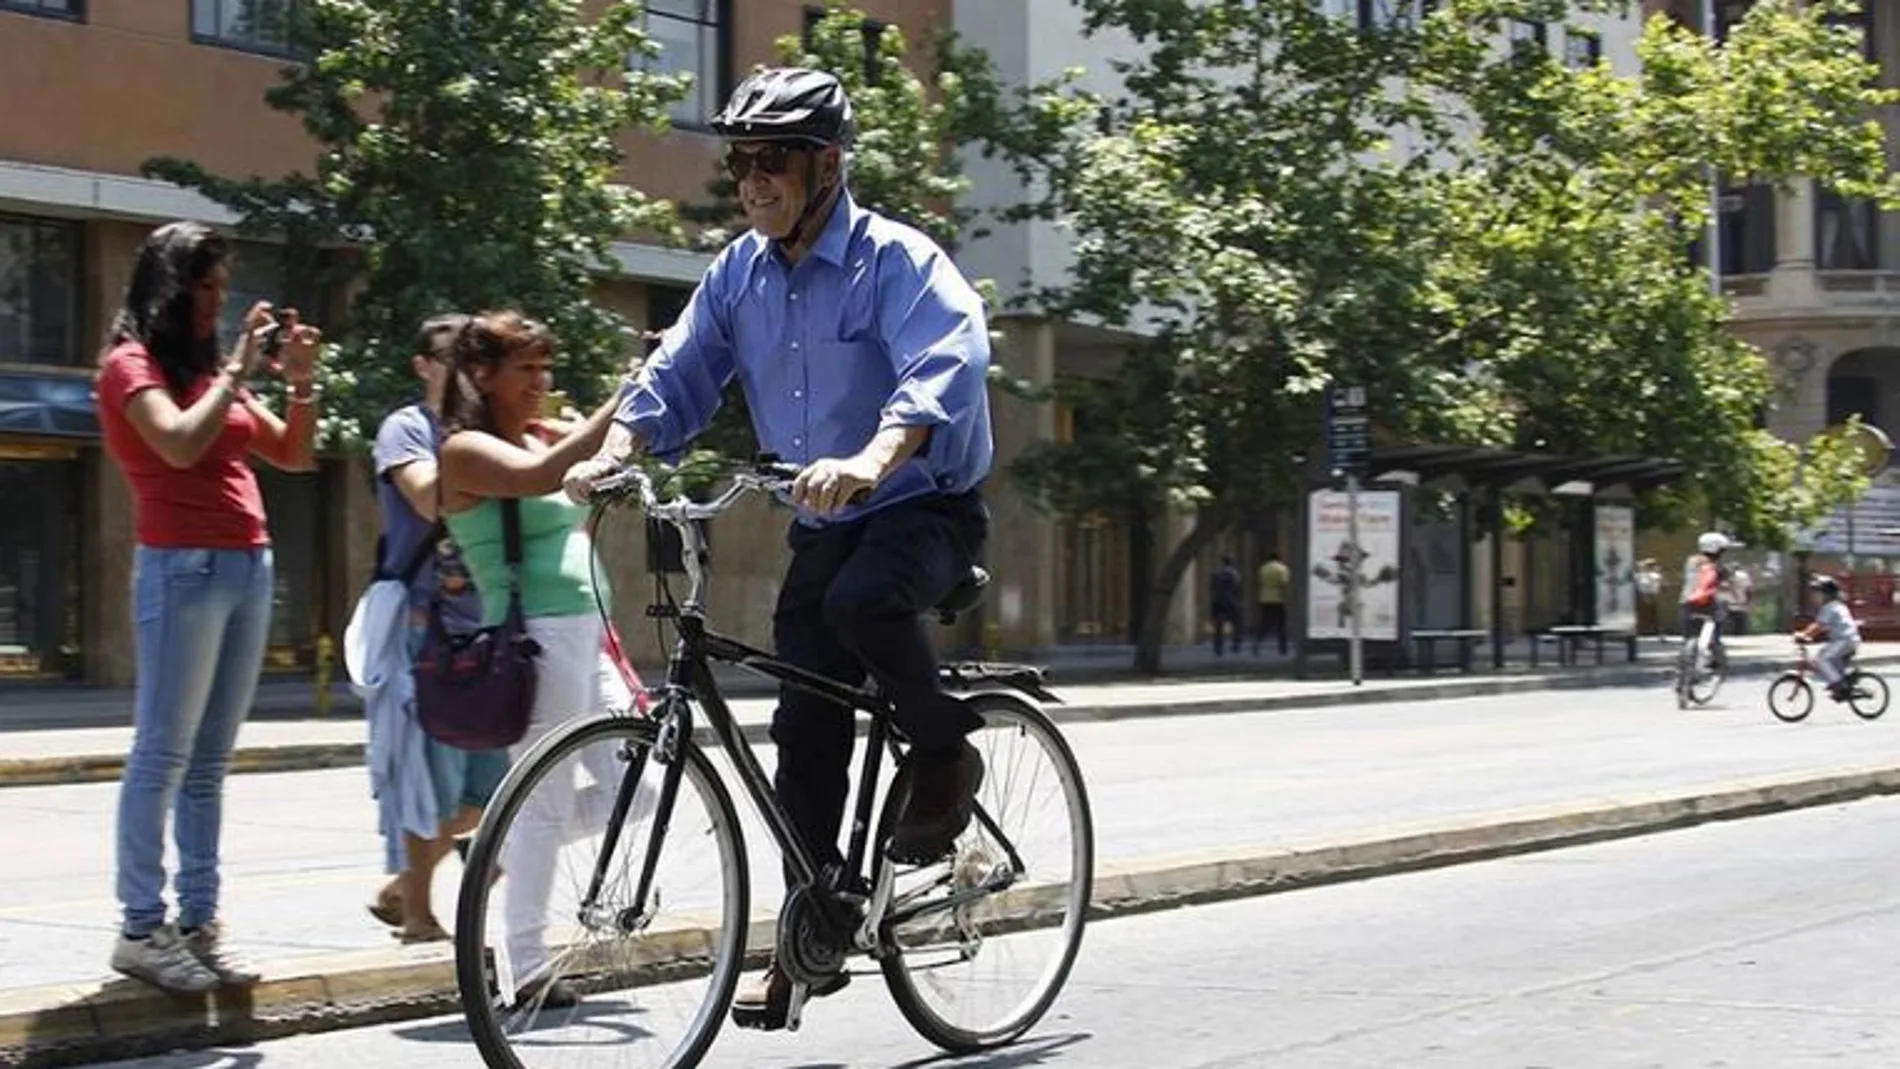 Piñera cogió una bicicleta «antirrobo» y demostró cómo robarla / Twitter